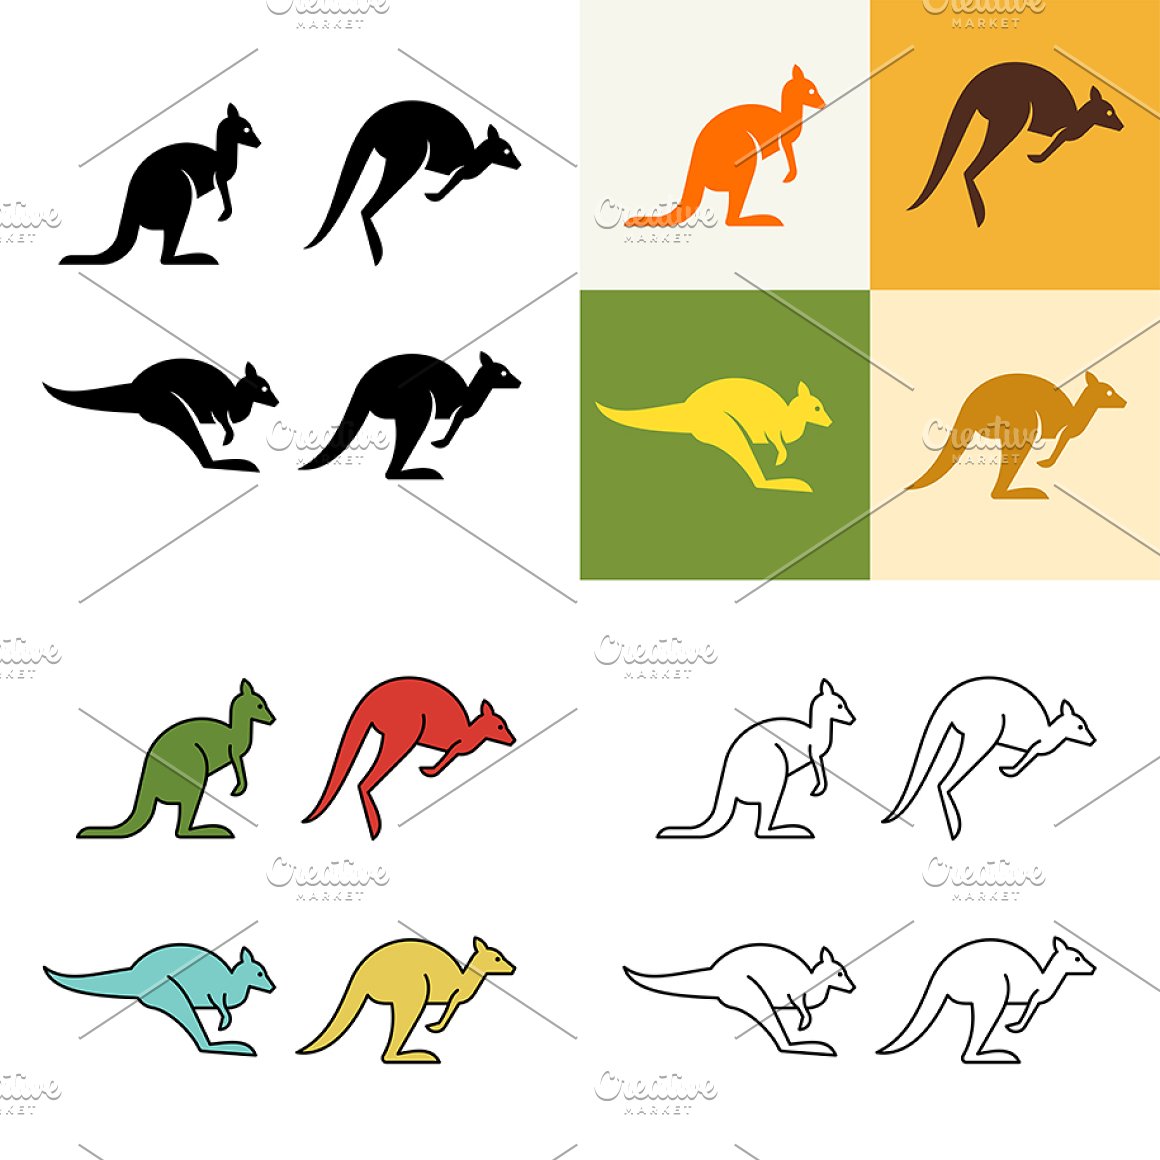 Diverse of colorful kangaroos.